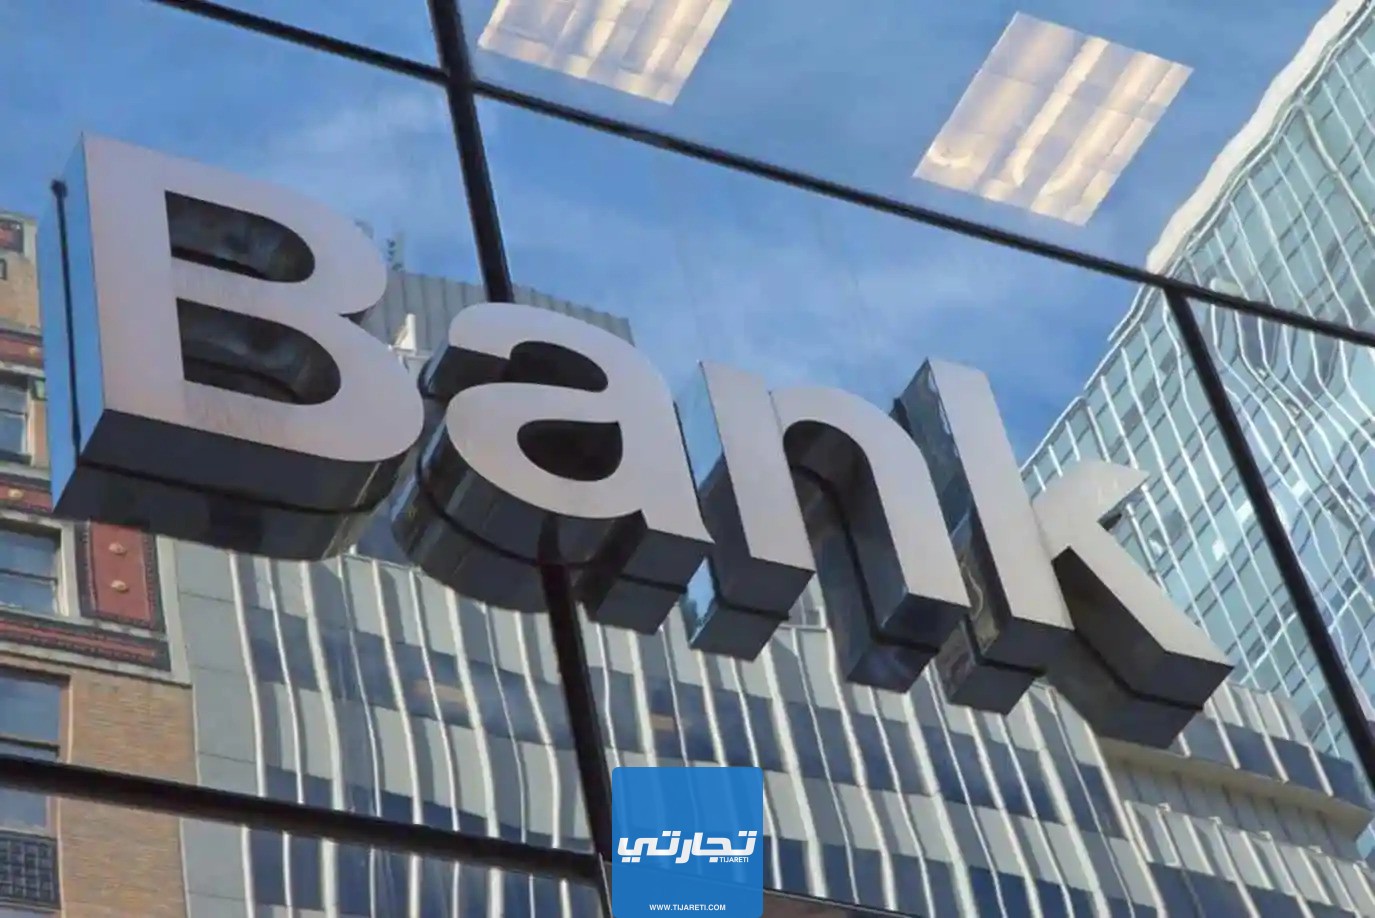 حالات وصول الحوالة بين البنوك المحلية السعودية بشكل فوري